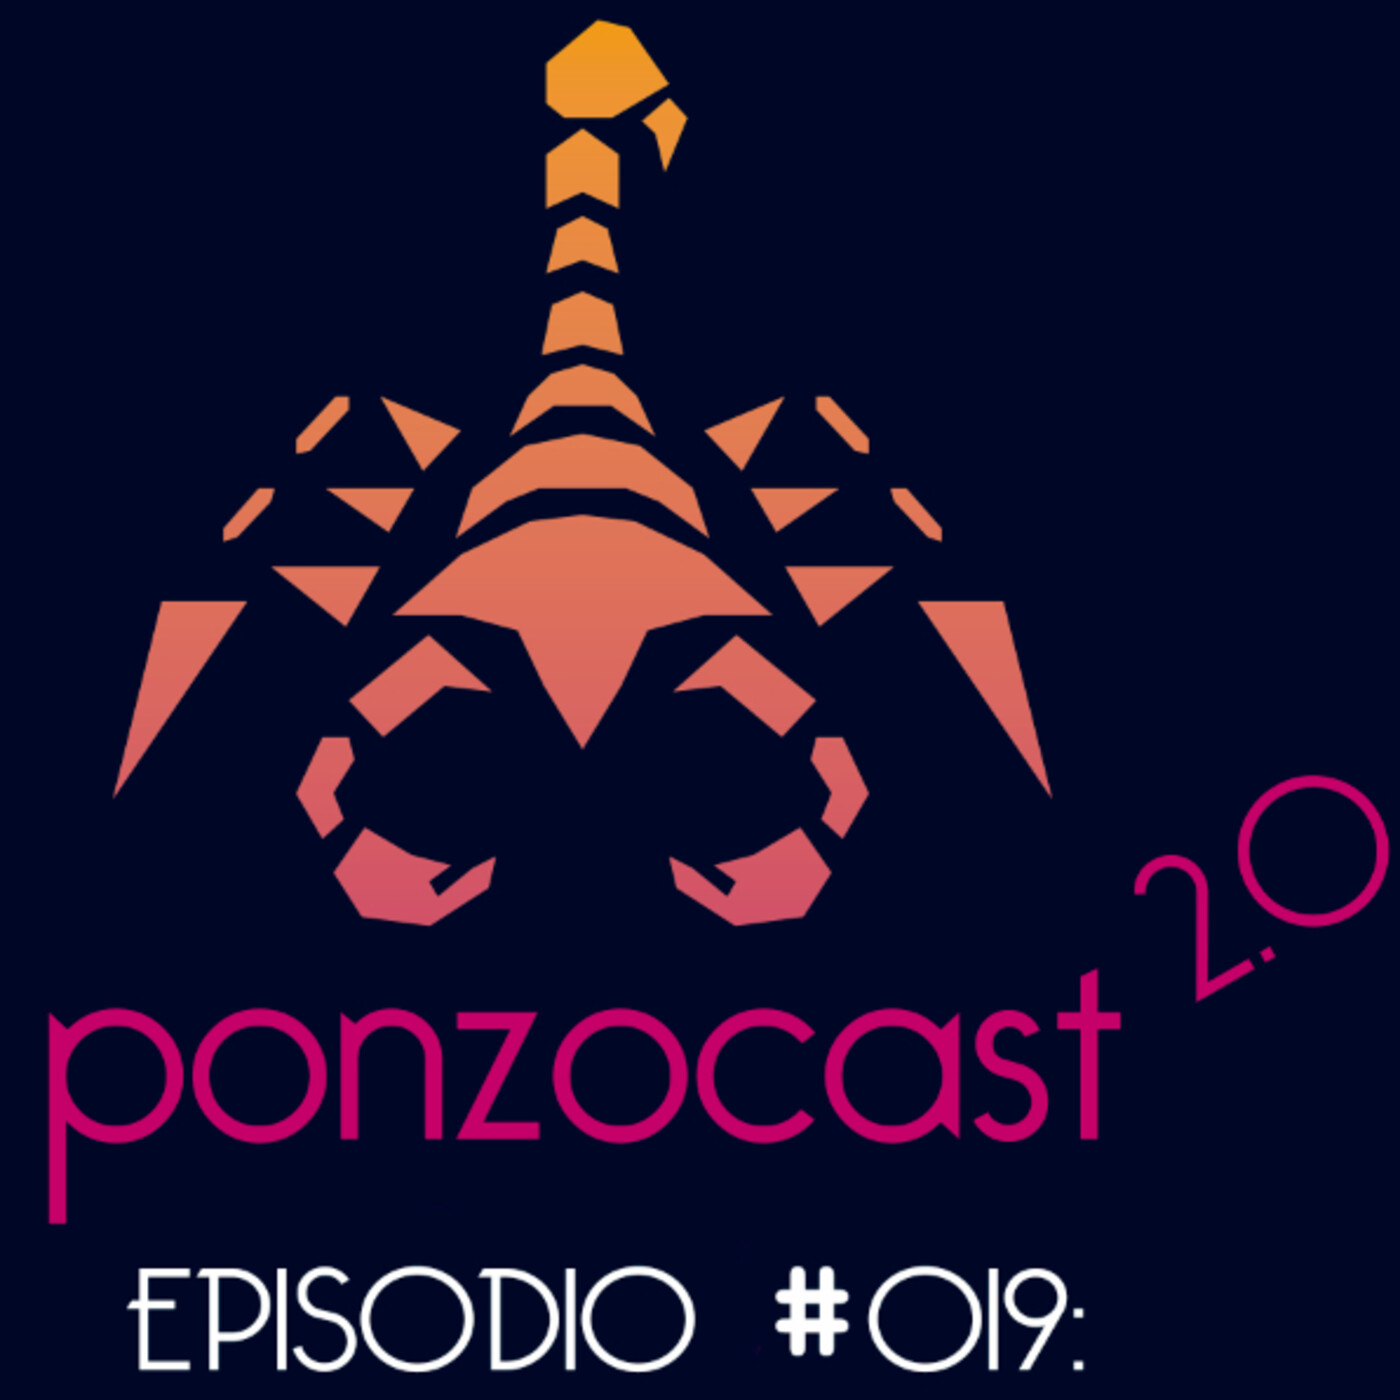 Ponzocast 2.0: Episodio 019 - Mi vieja mula ya no es lo que era